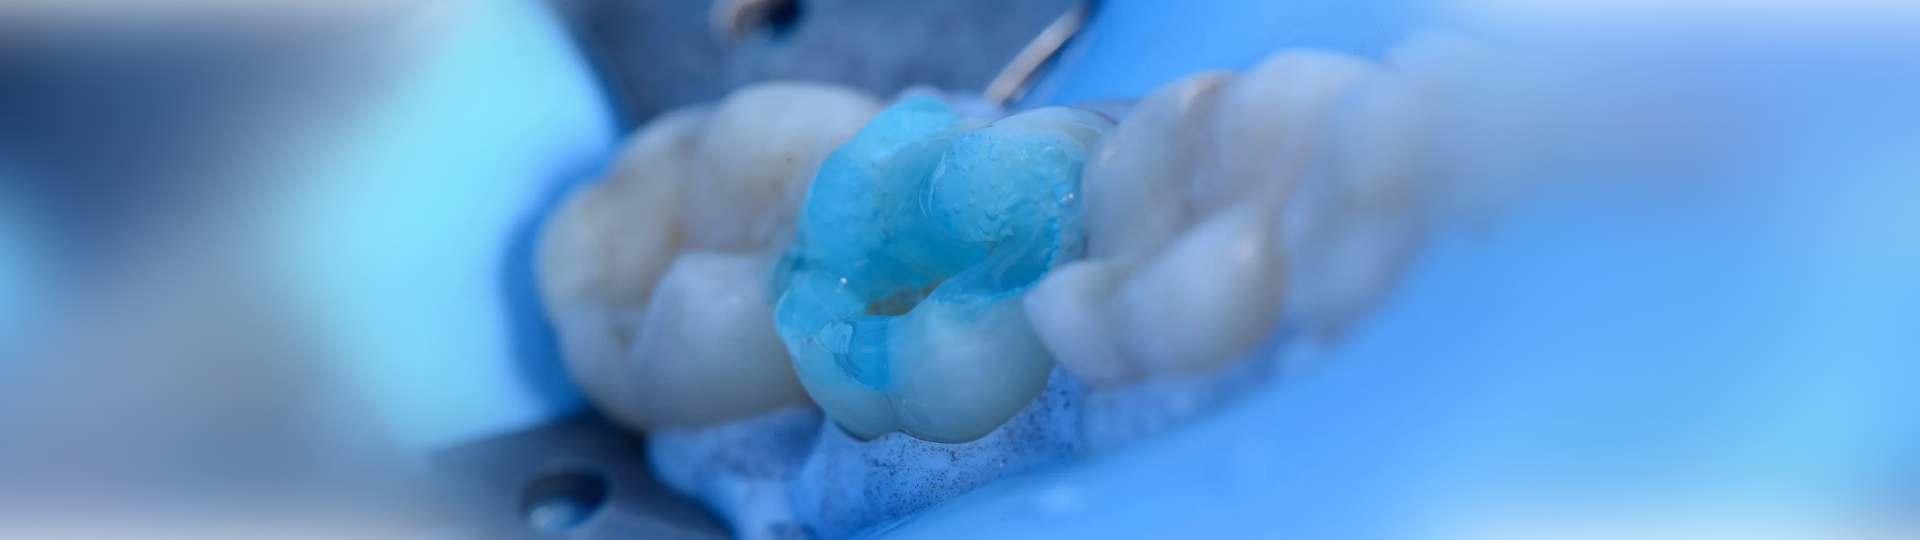 ¿Por qué utilizar el ácido fosfórico en las restauraciones dentales?